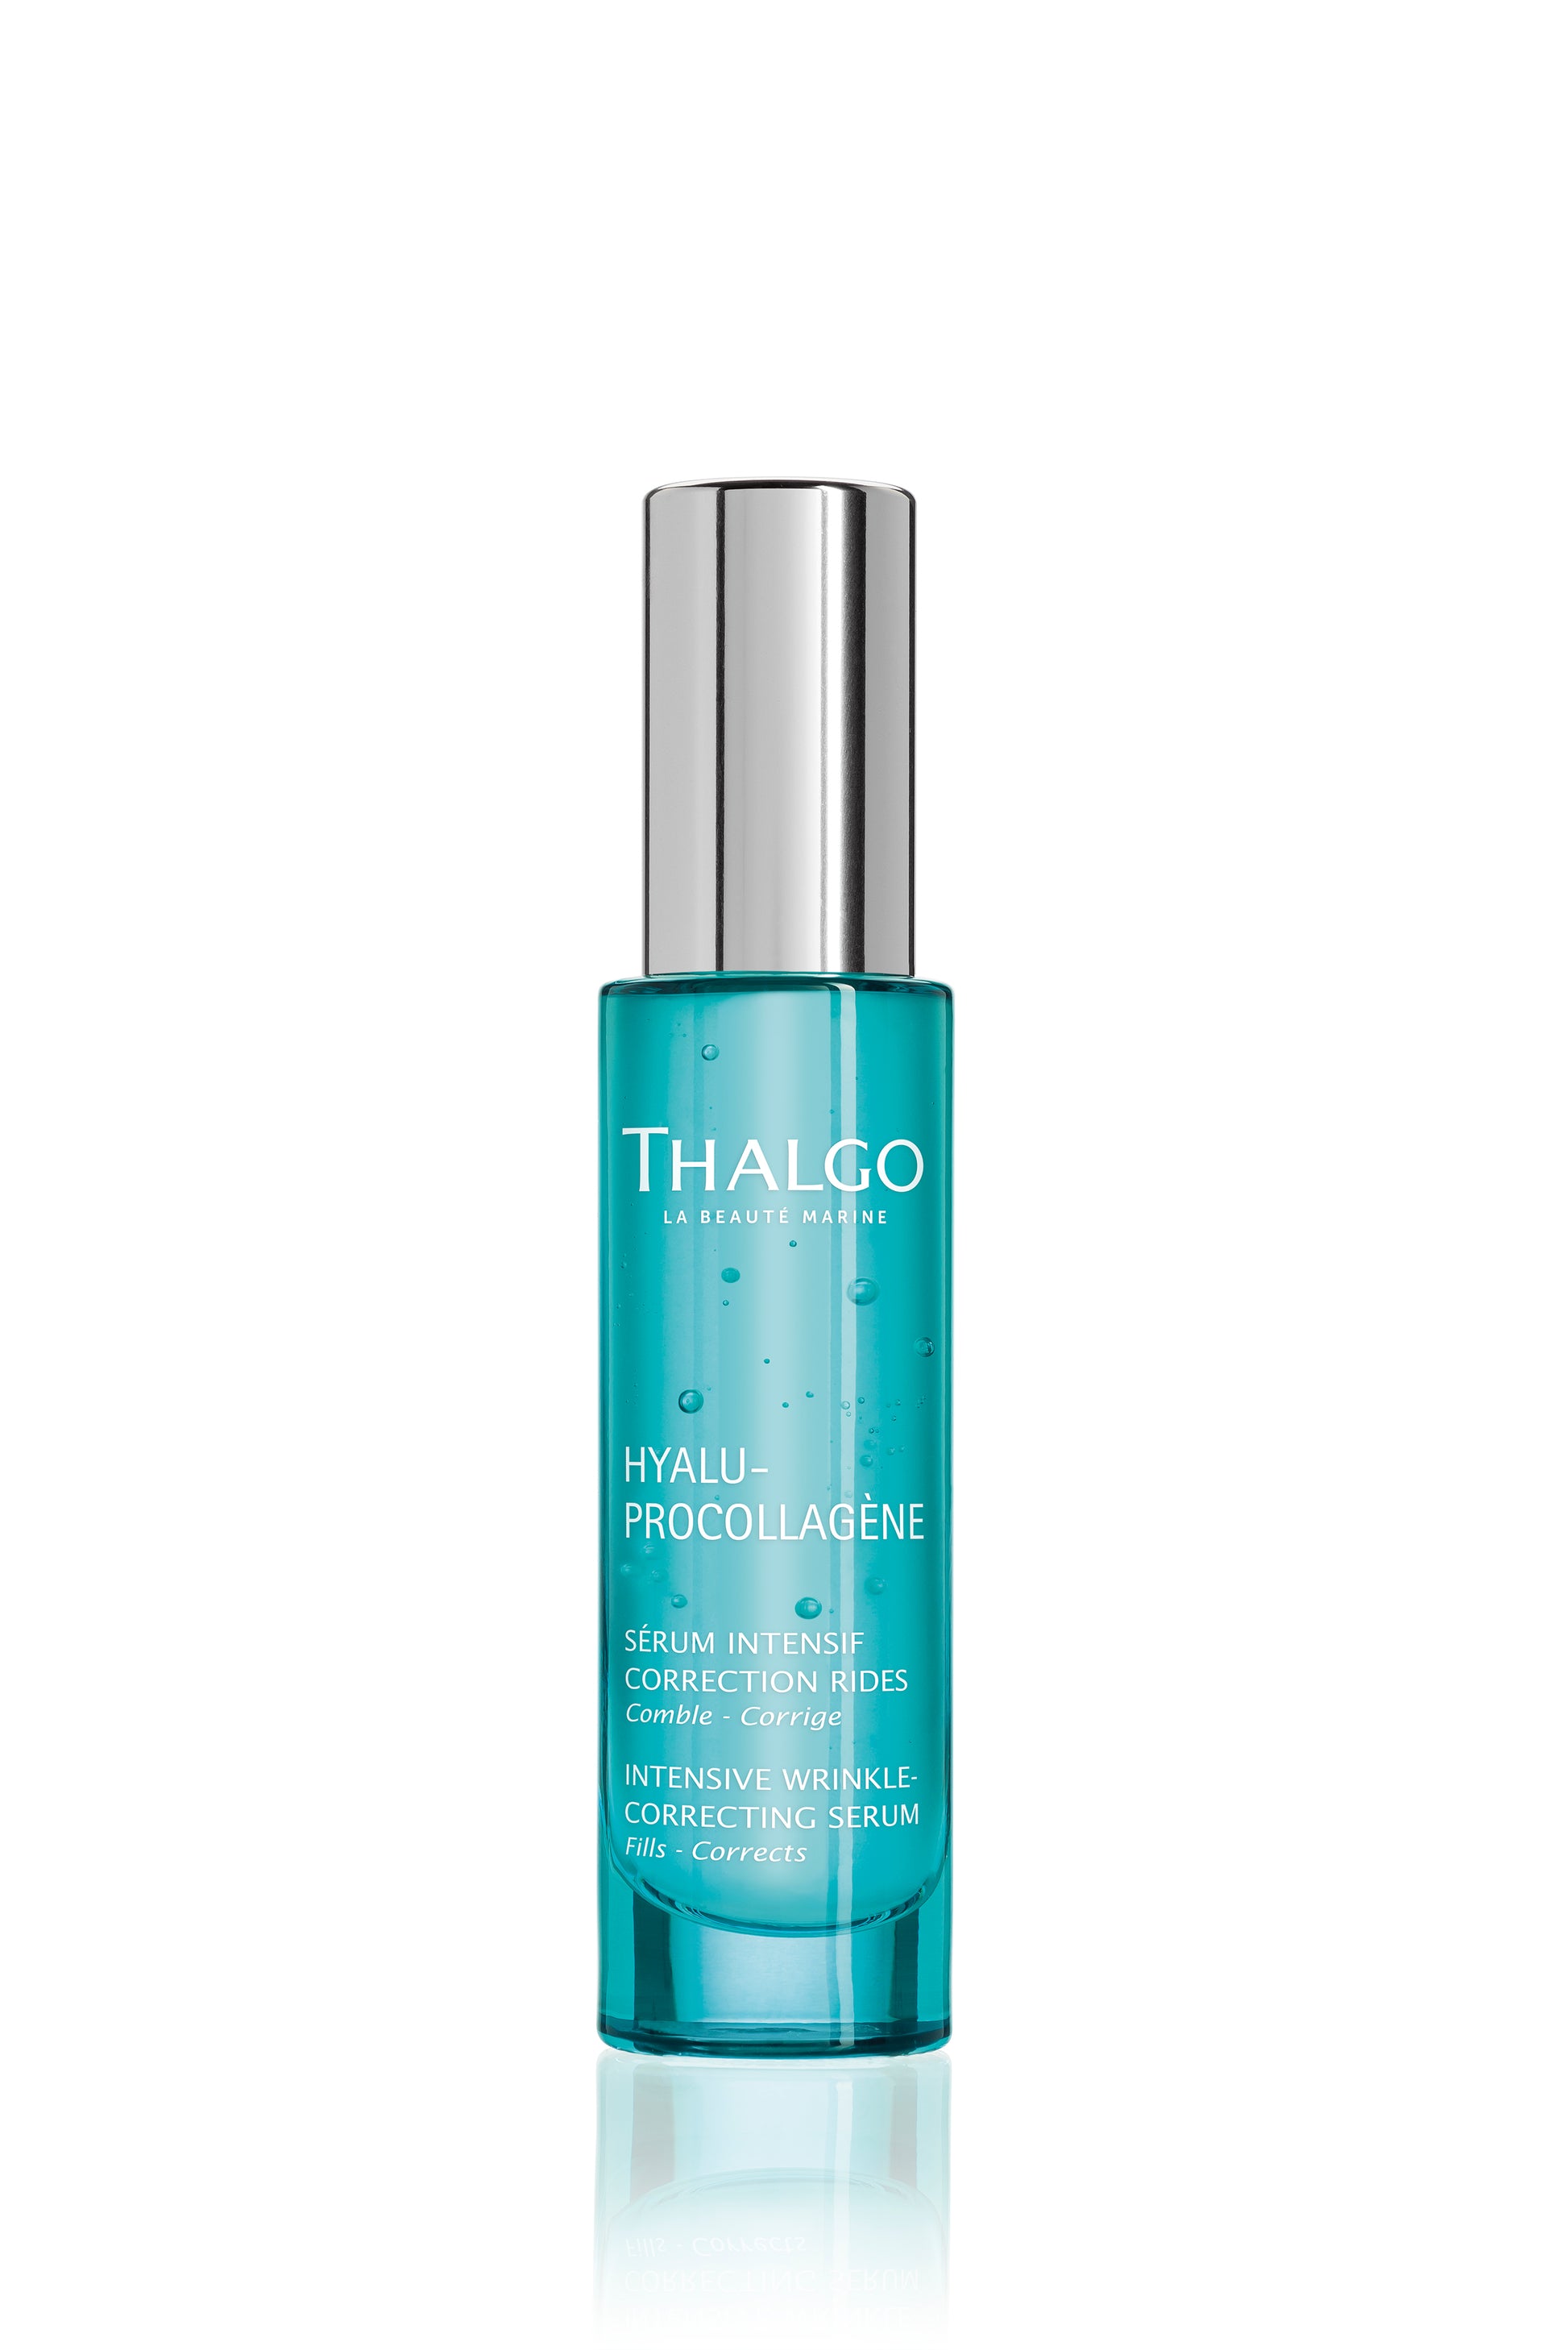 Thalgo Intensive Wrinkle-Correcting Serum - (30ml) Sabnatural